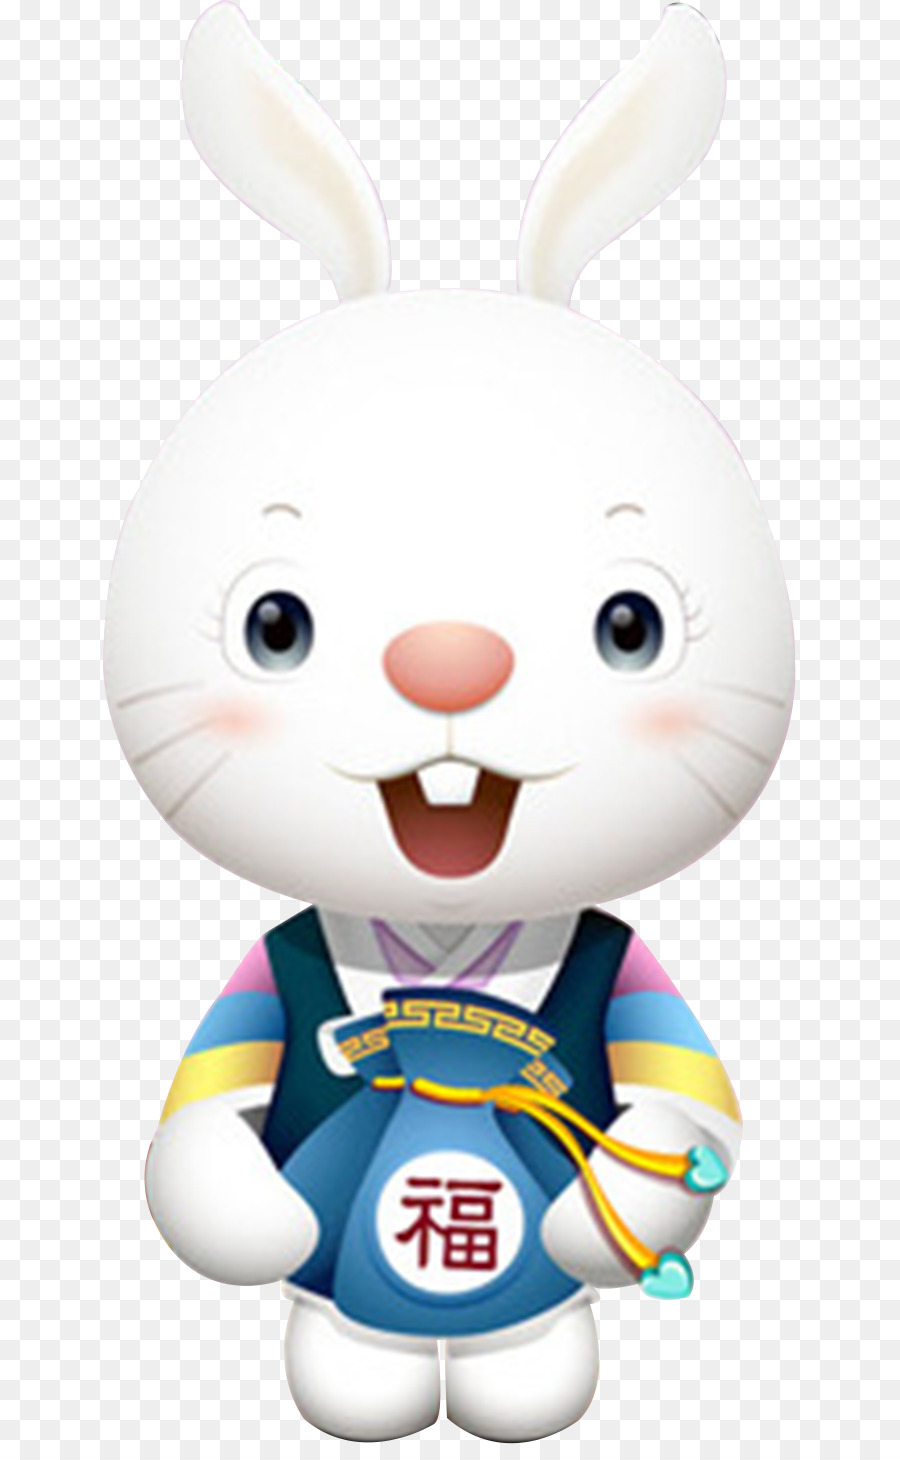 Easter Bunny thỏ mặt Trăng rằm - Con thỏ nhỏ dễ thương